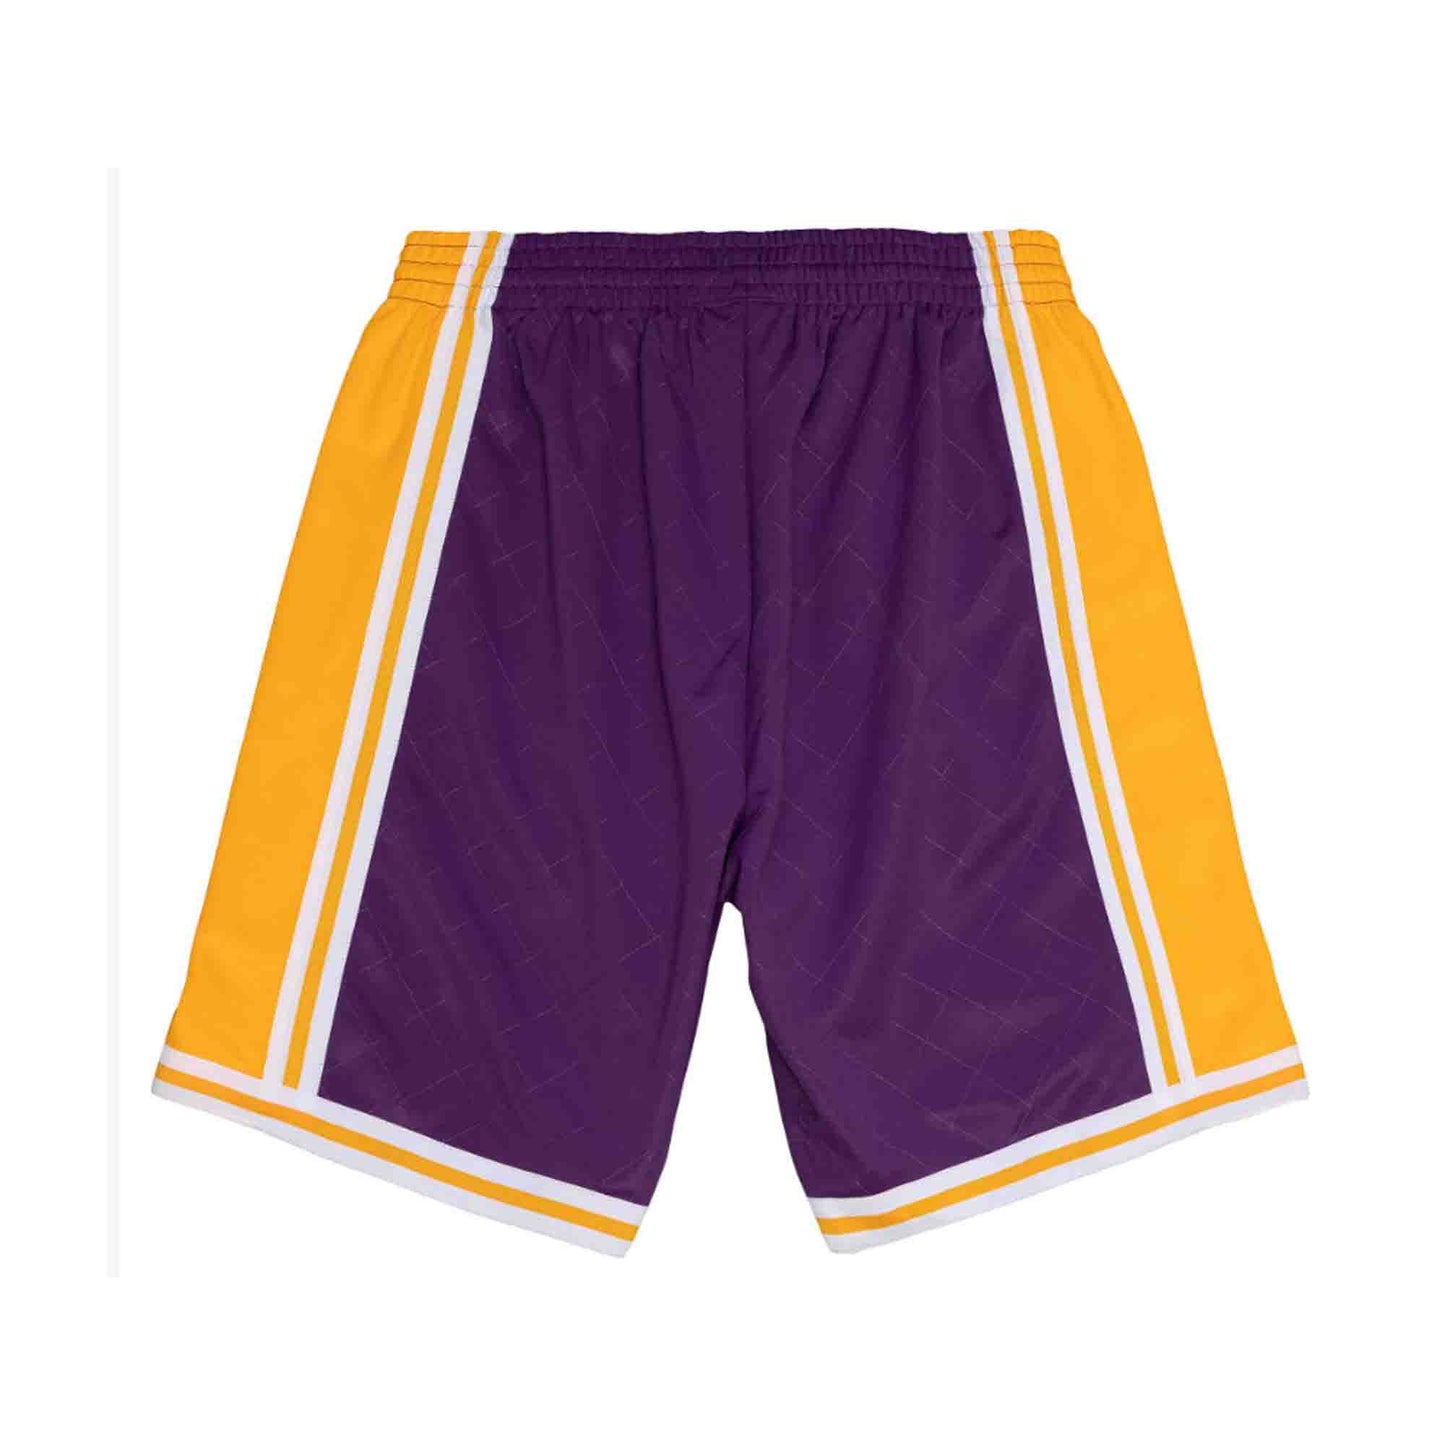 NBA Swingman Shorts Los Angeles Lakers 1984-85